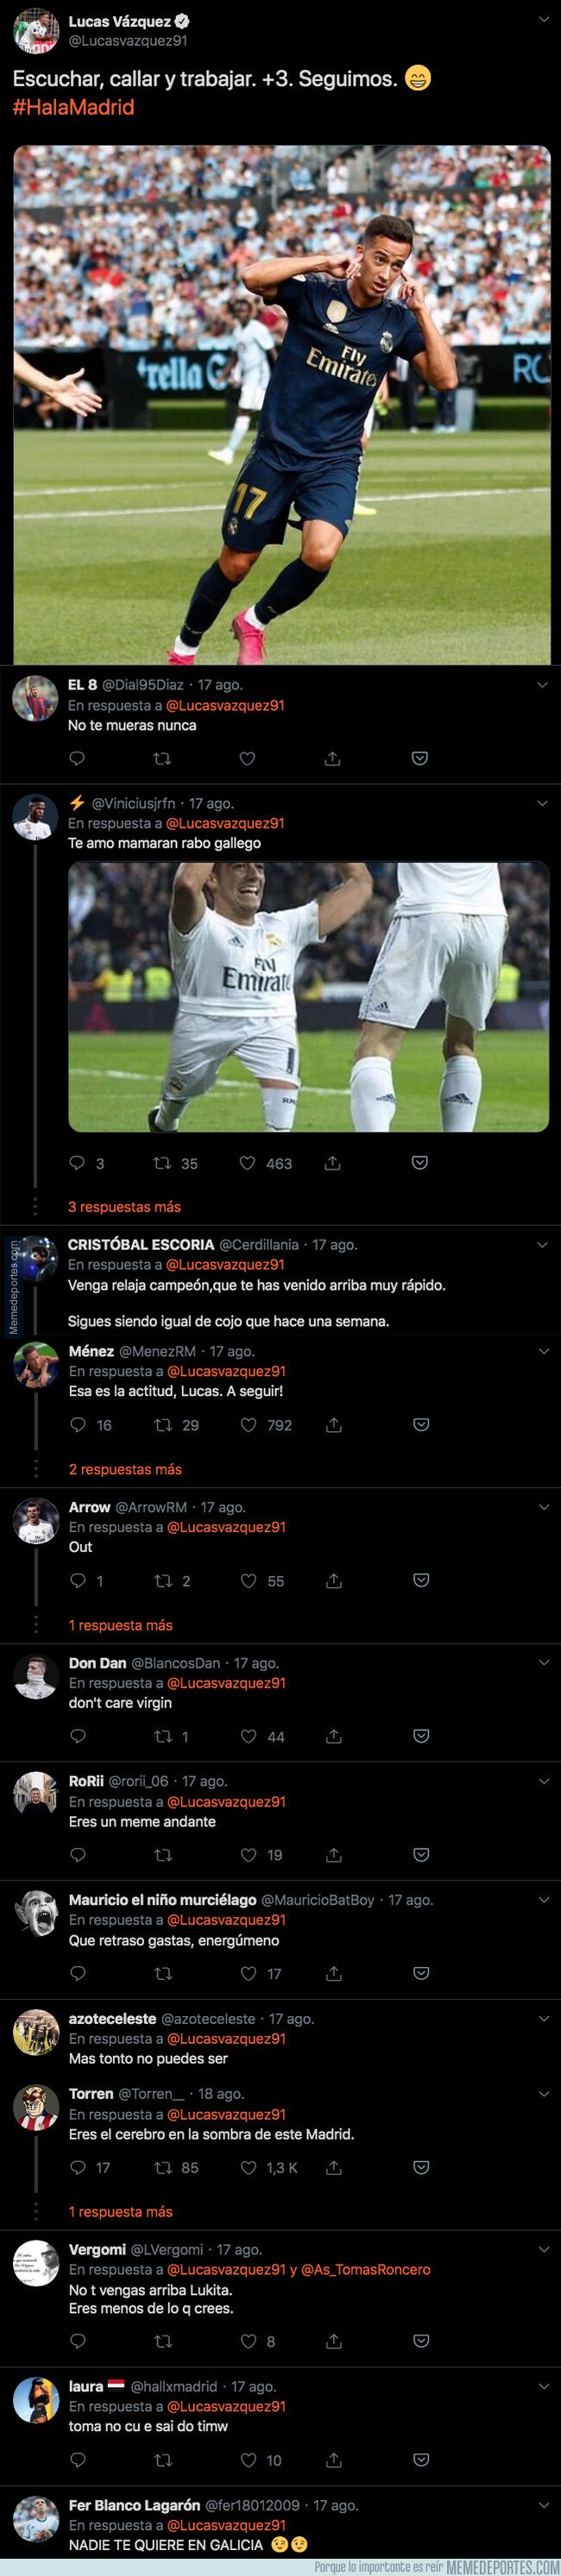 1083743 - Lucas Vázquez marca un gol, se lo dedica a Twitter callándoles la boca y todo el mundo le responde sin piedad